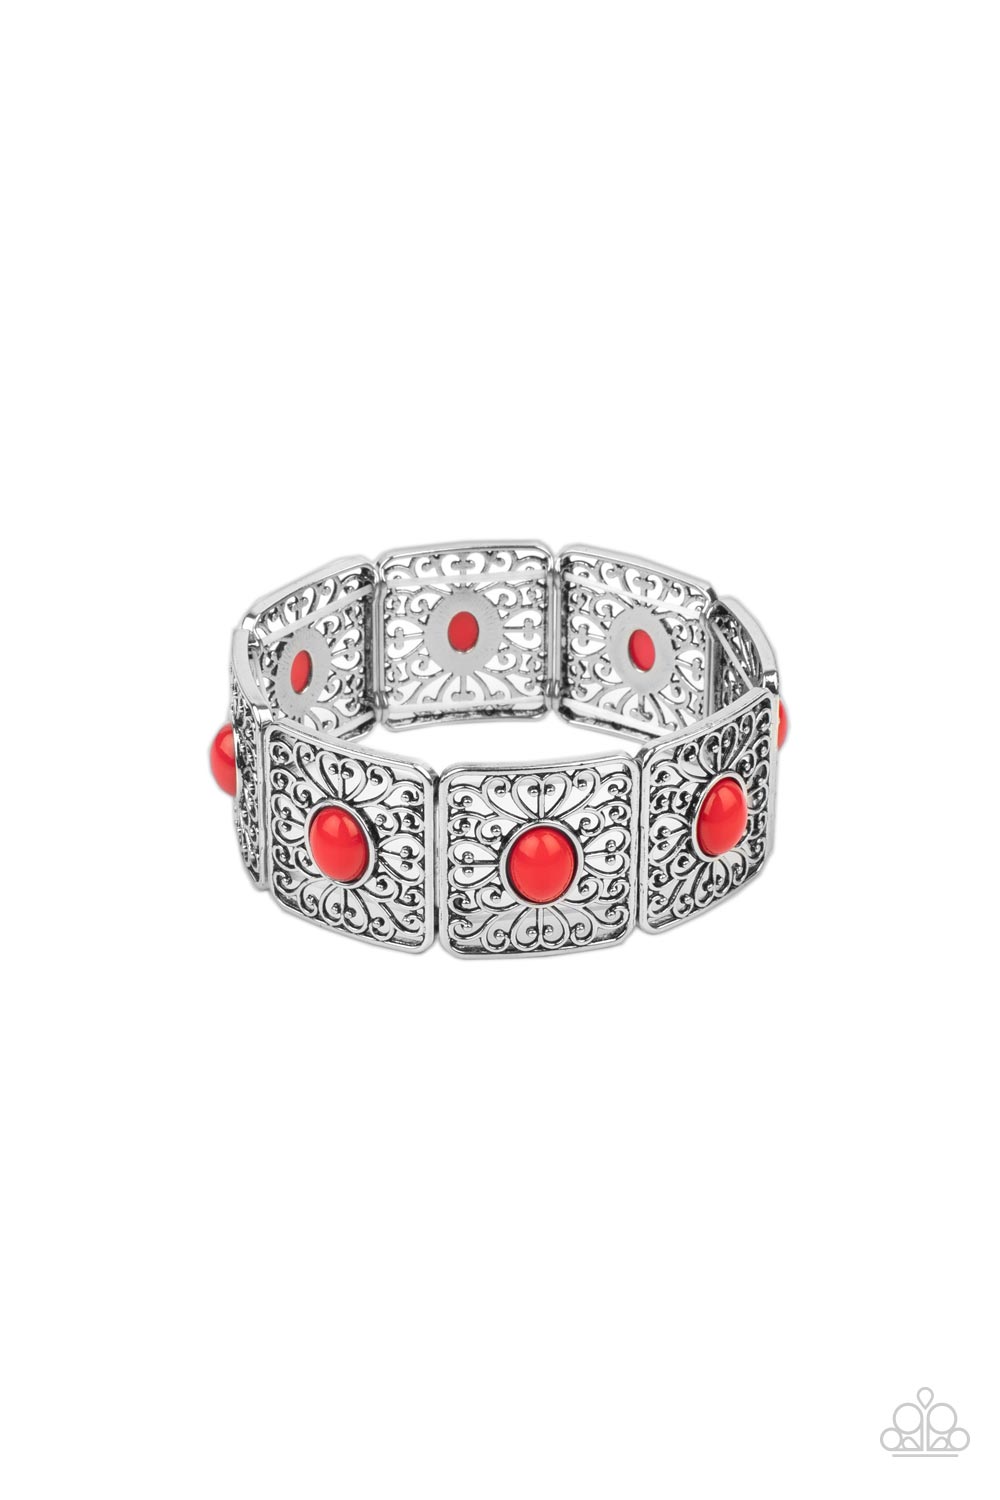 Strategic Sparkle Red Bracelet - Jewelry by Bretta